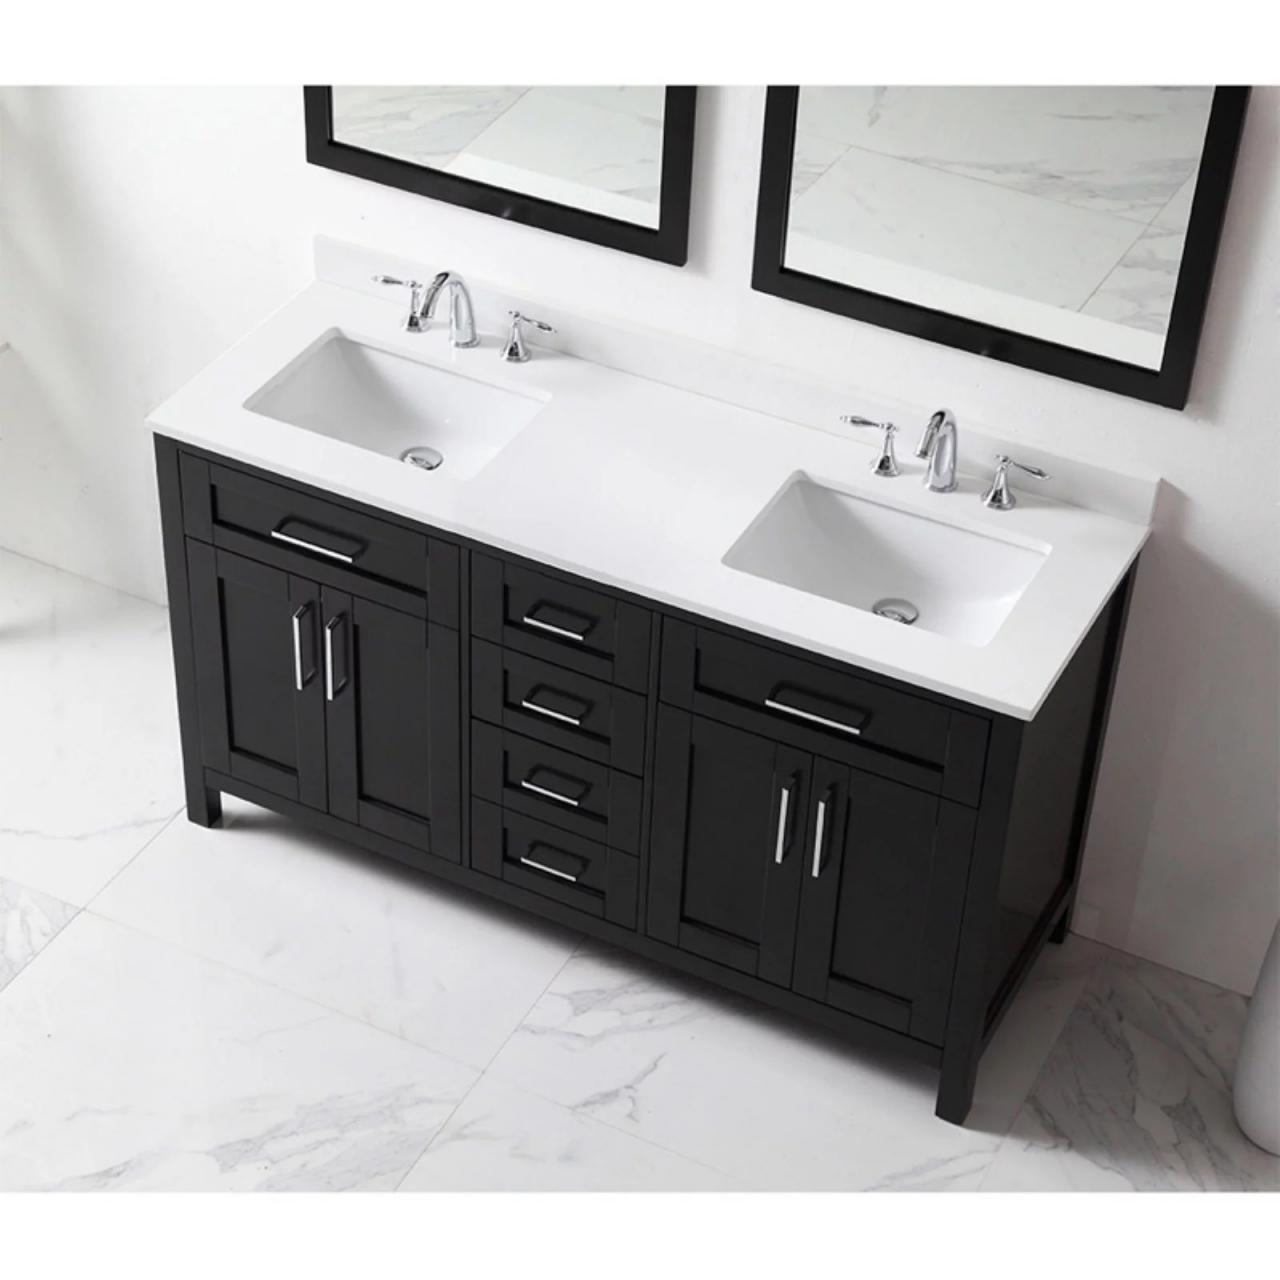 OVE Decors 60 in. Double Sink Bathroom Vanity